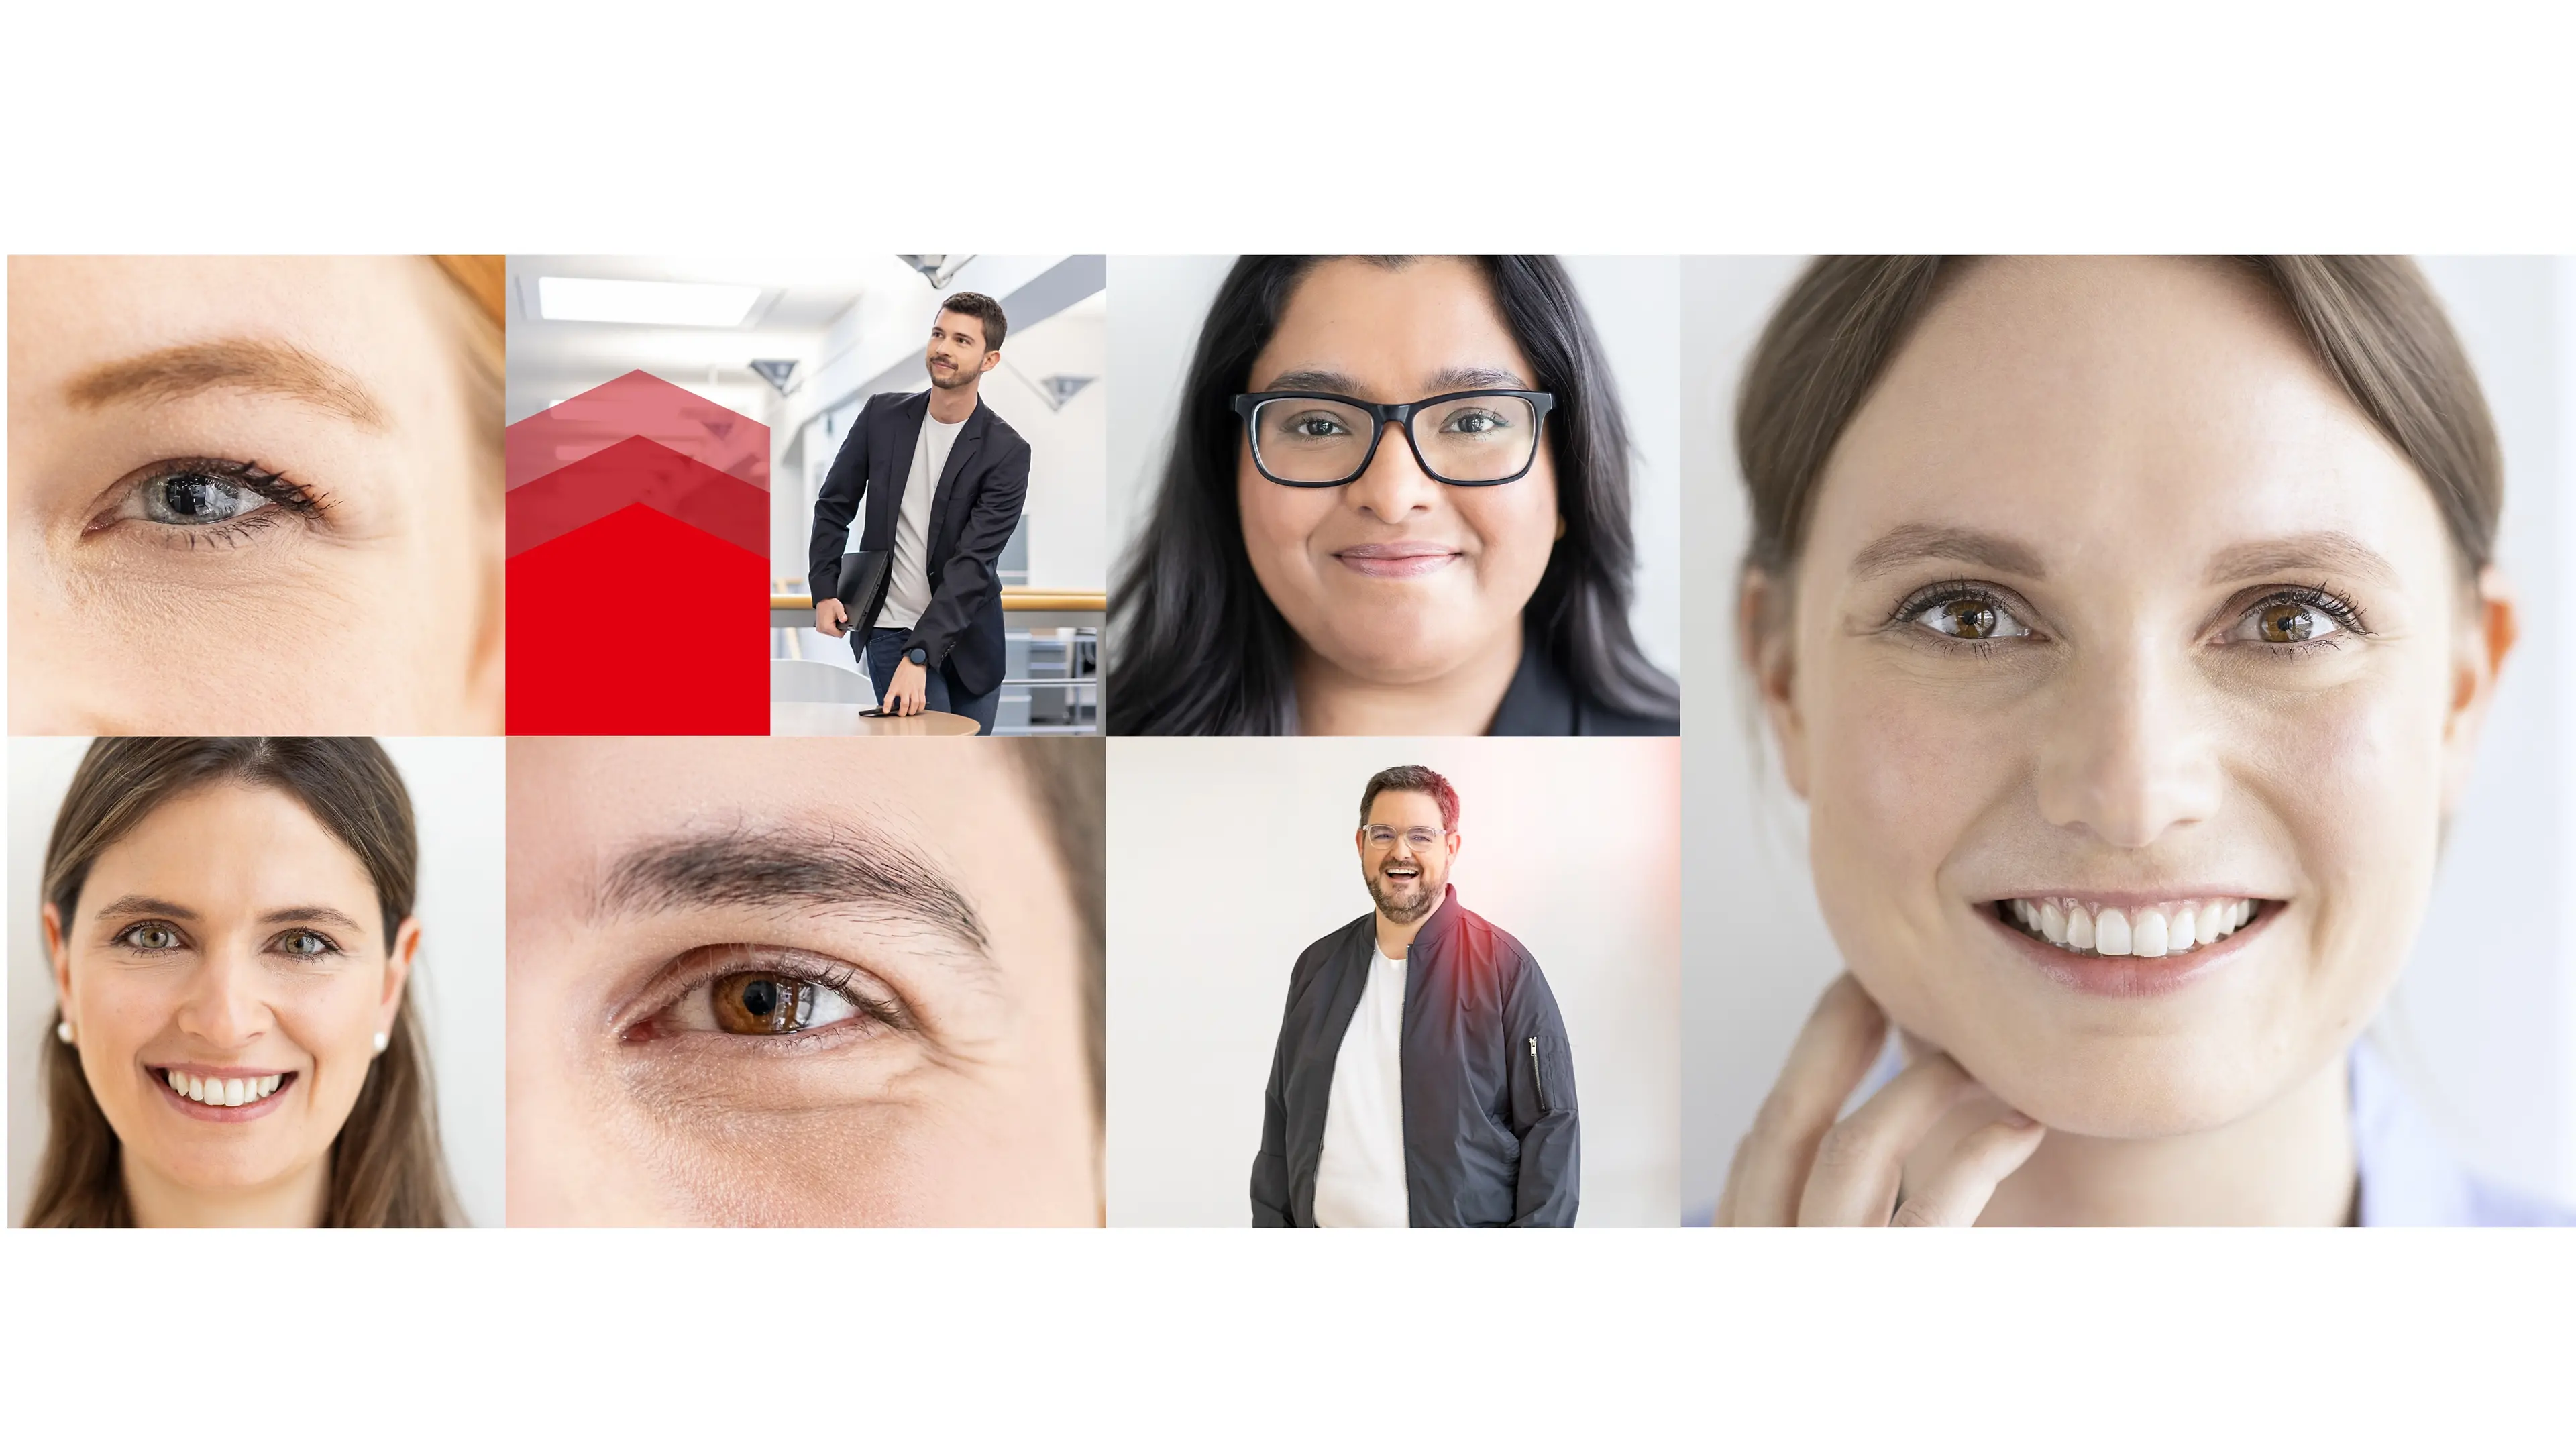 Varios retratos de empleados de Henkel reunidos en un collage